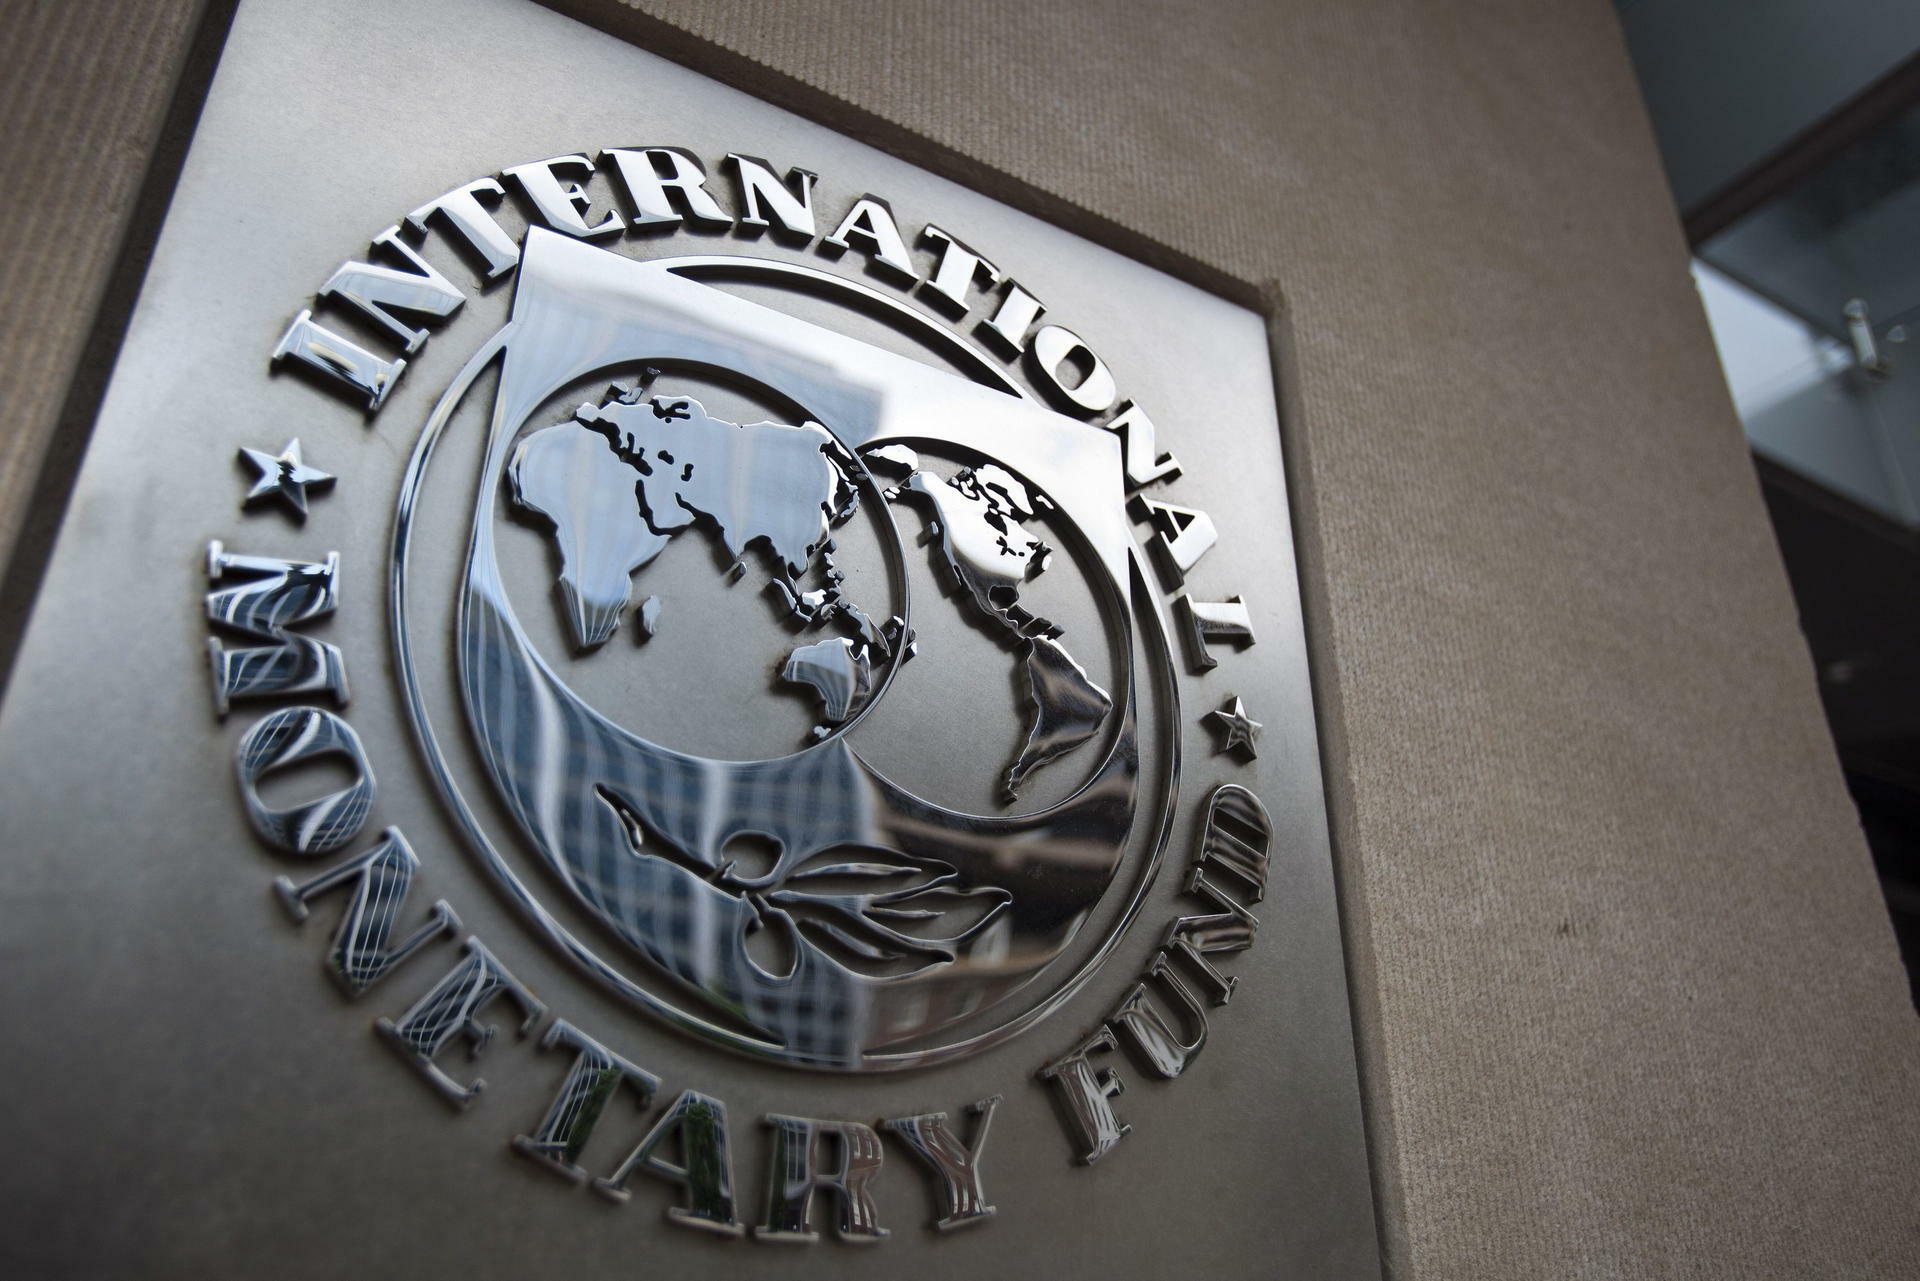 FMI y el BM inauguran sus reuniones en tiempos de gran incertidumbre   Podium Magazine News